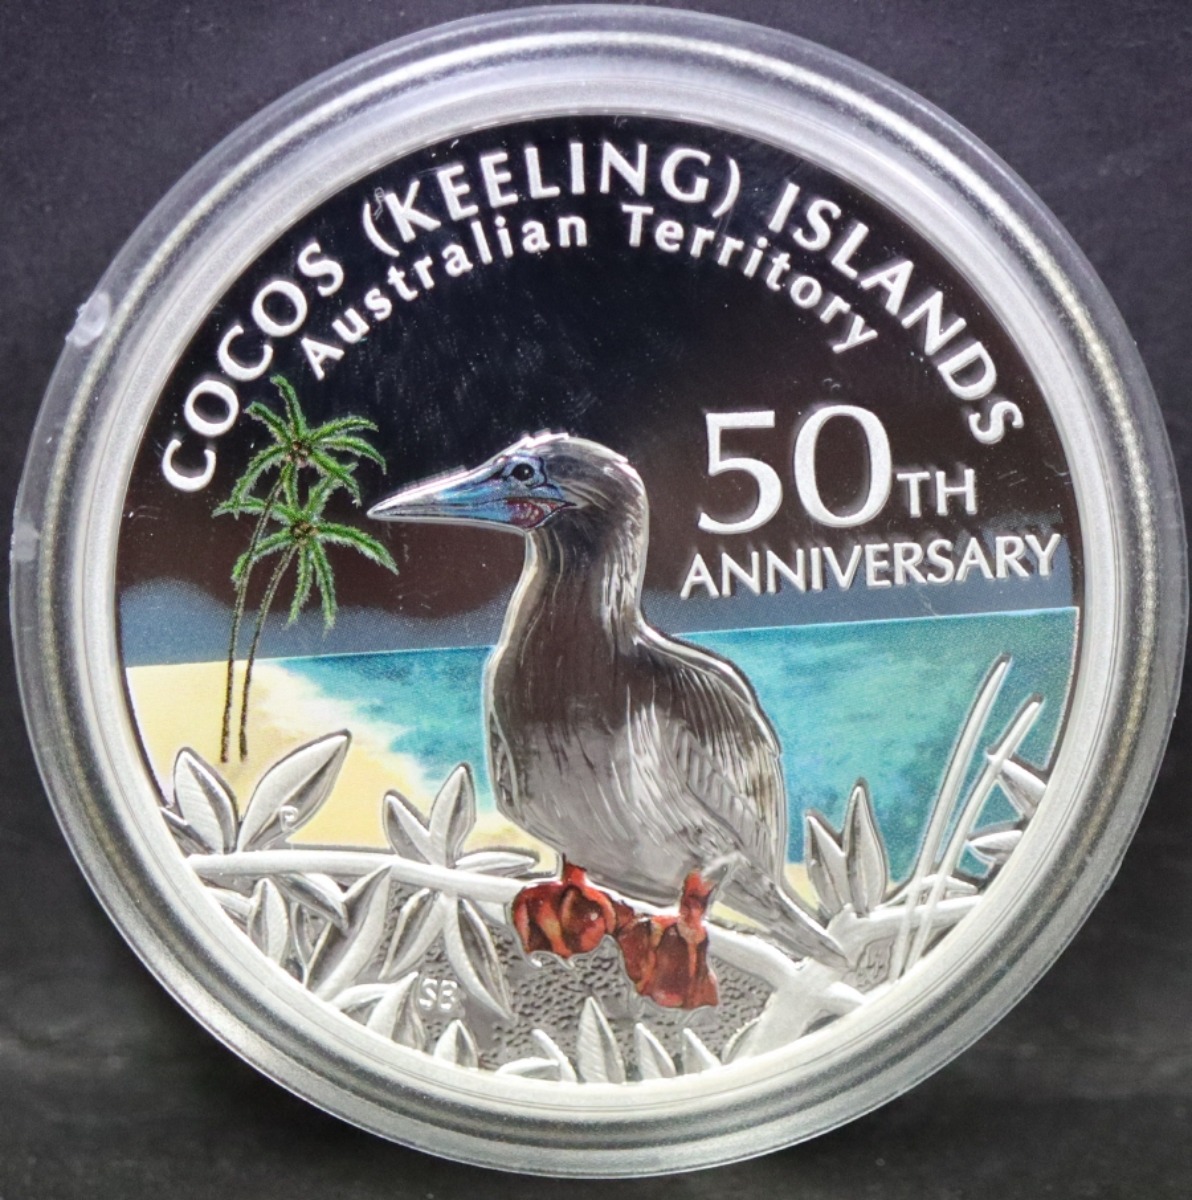 호주 2005년 코코스 아일랜드 (킬링 제도, 호주령) 자치 50주년 기념 은화